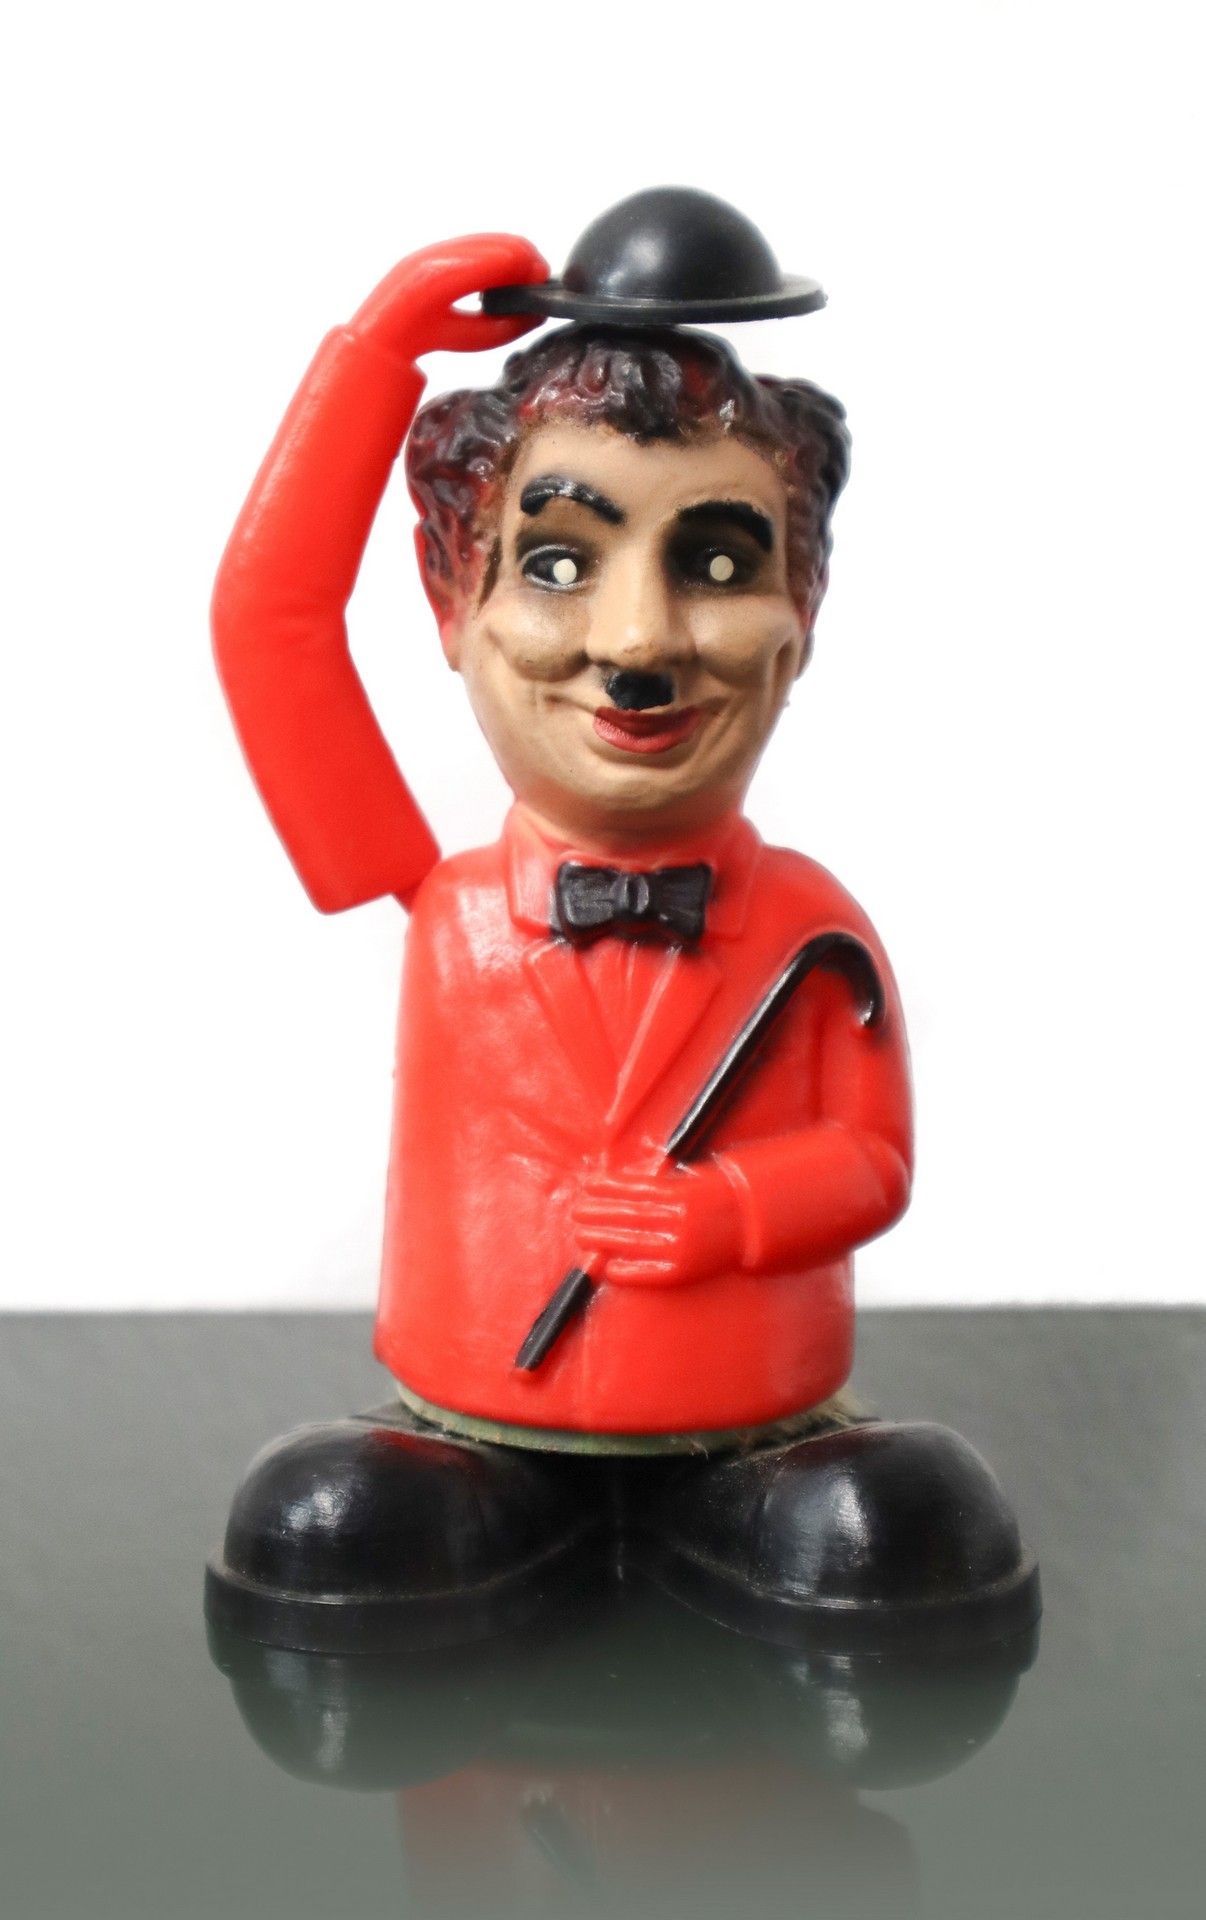 CO Charlie Chaplin. 

Artilugio de plástico de la película "The Brat", fabricado&hellip;